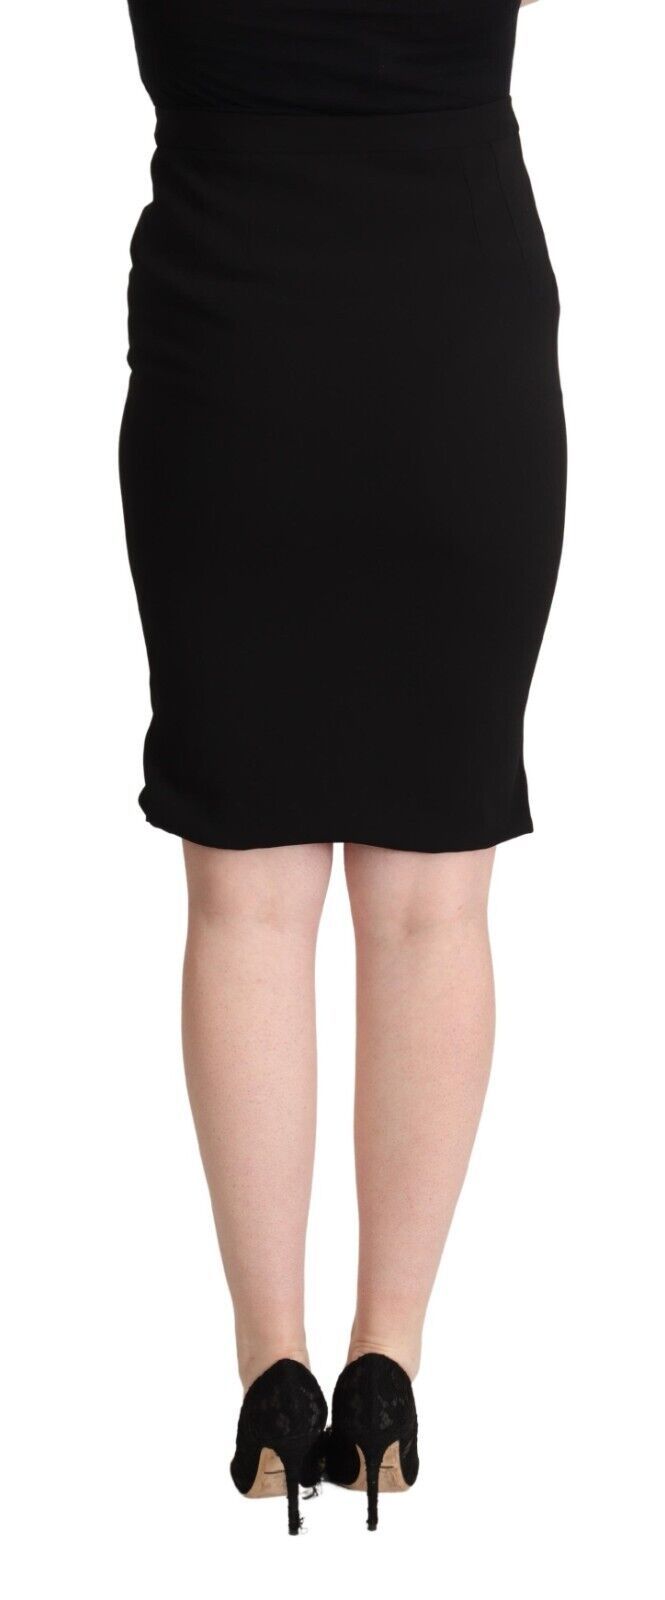 Black High Waist Knee Length Pencil Cut Skirt